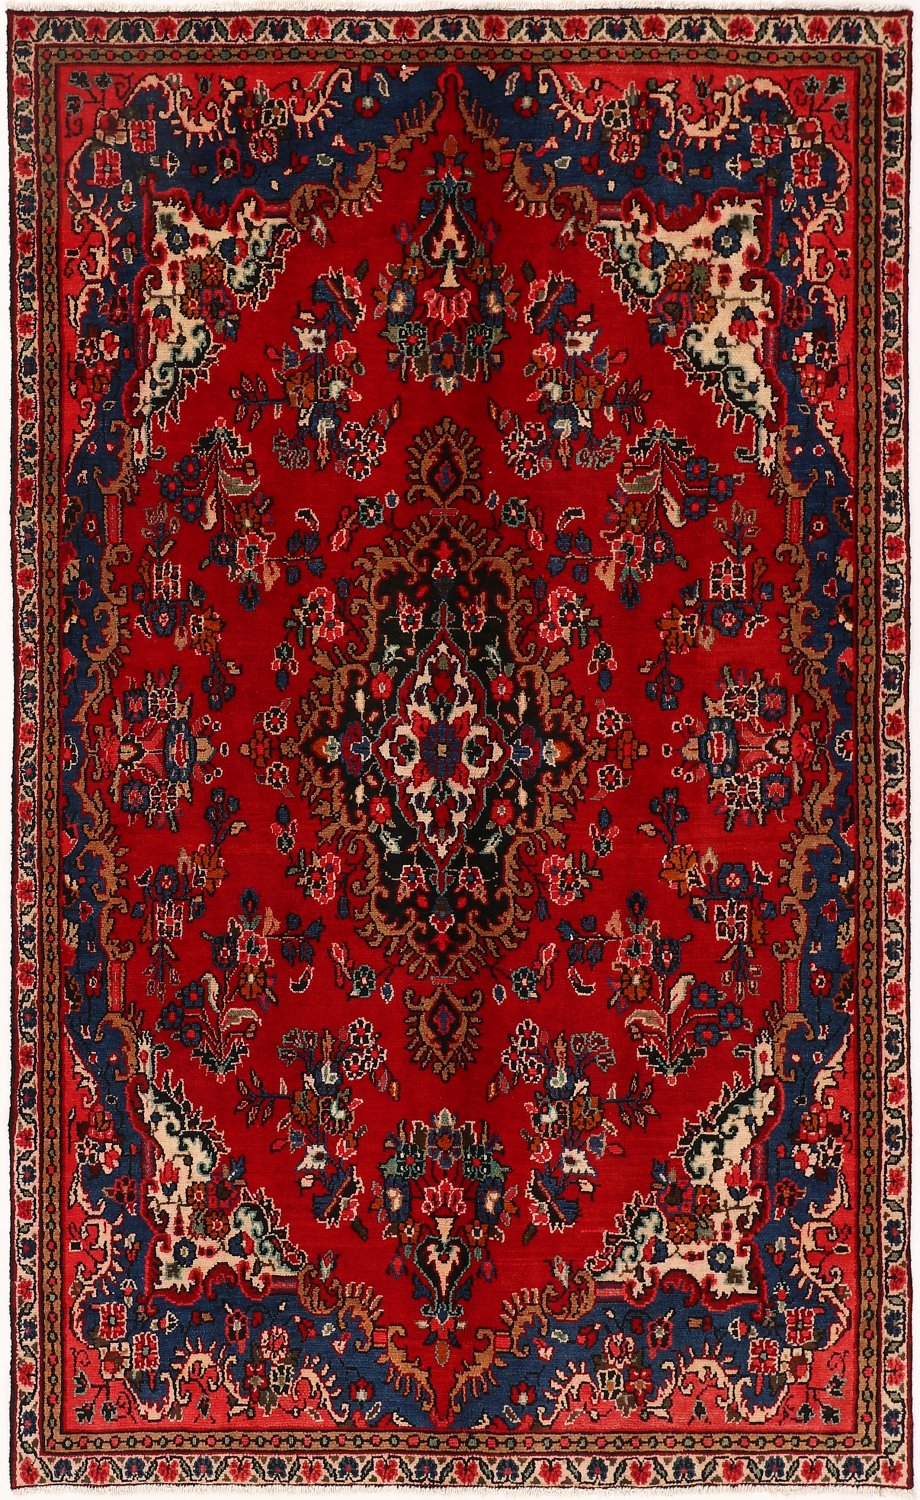 Persian rug Hamedan 269 x 165 cm